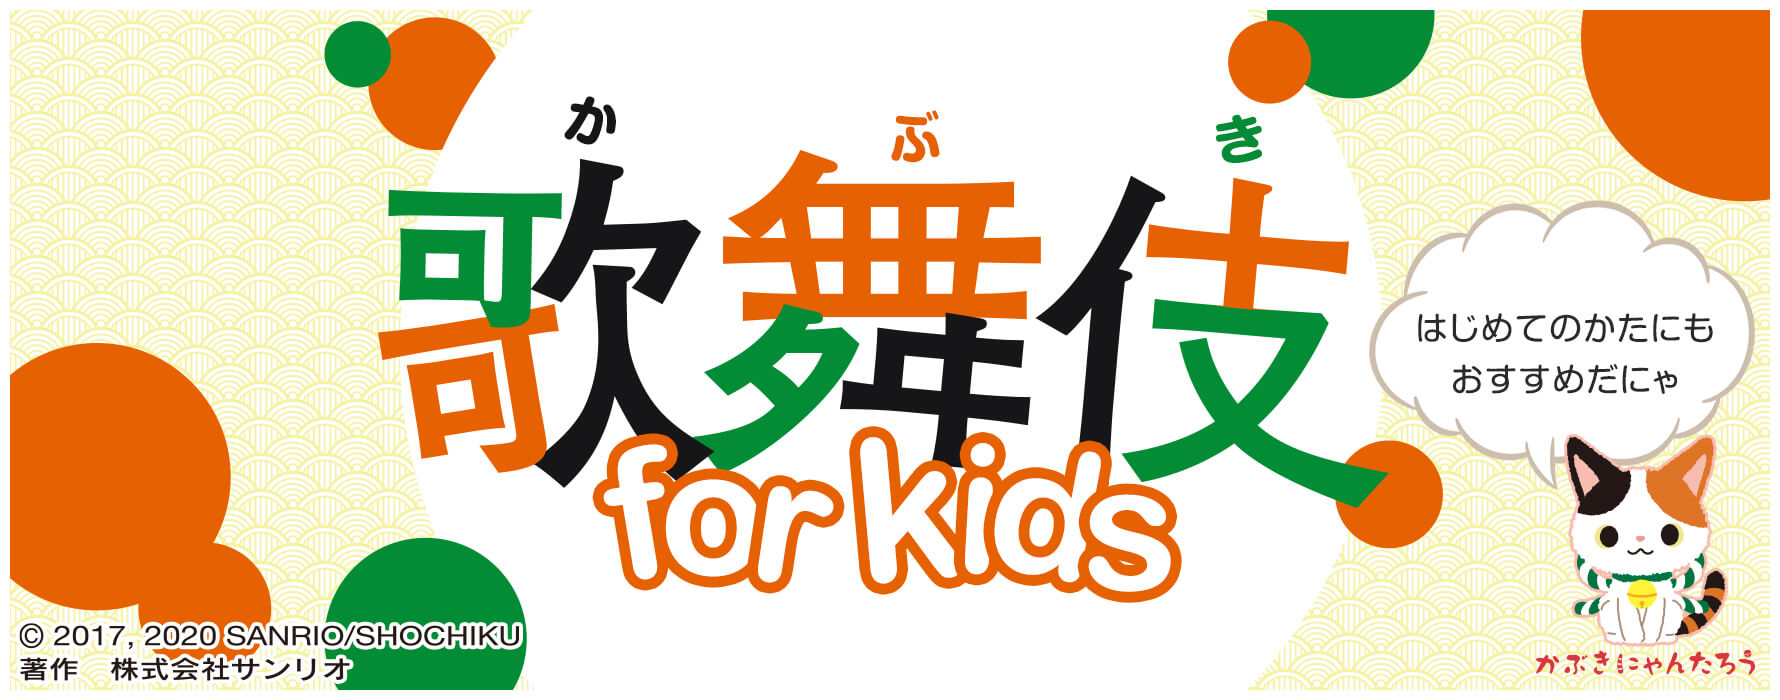 歌舞伎 for kids